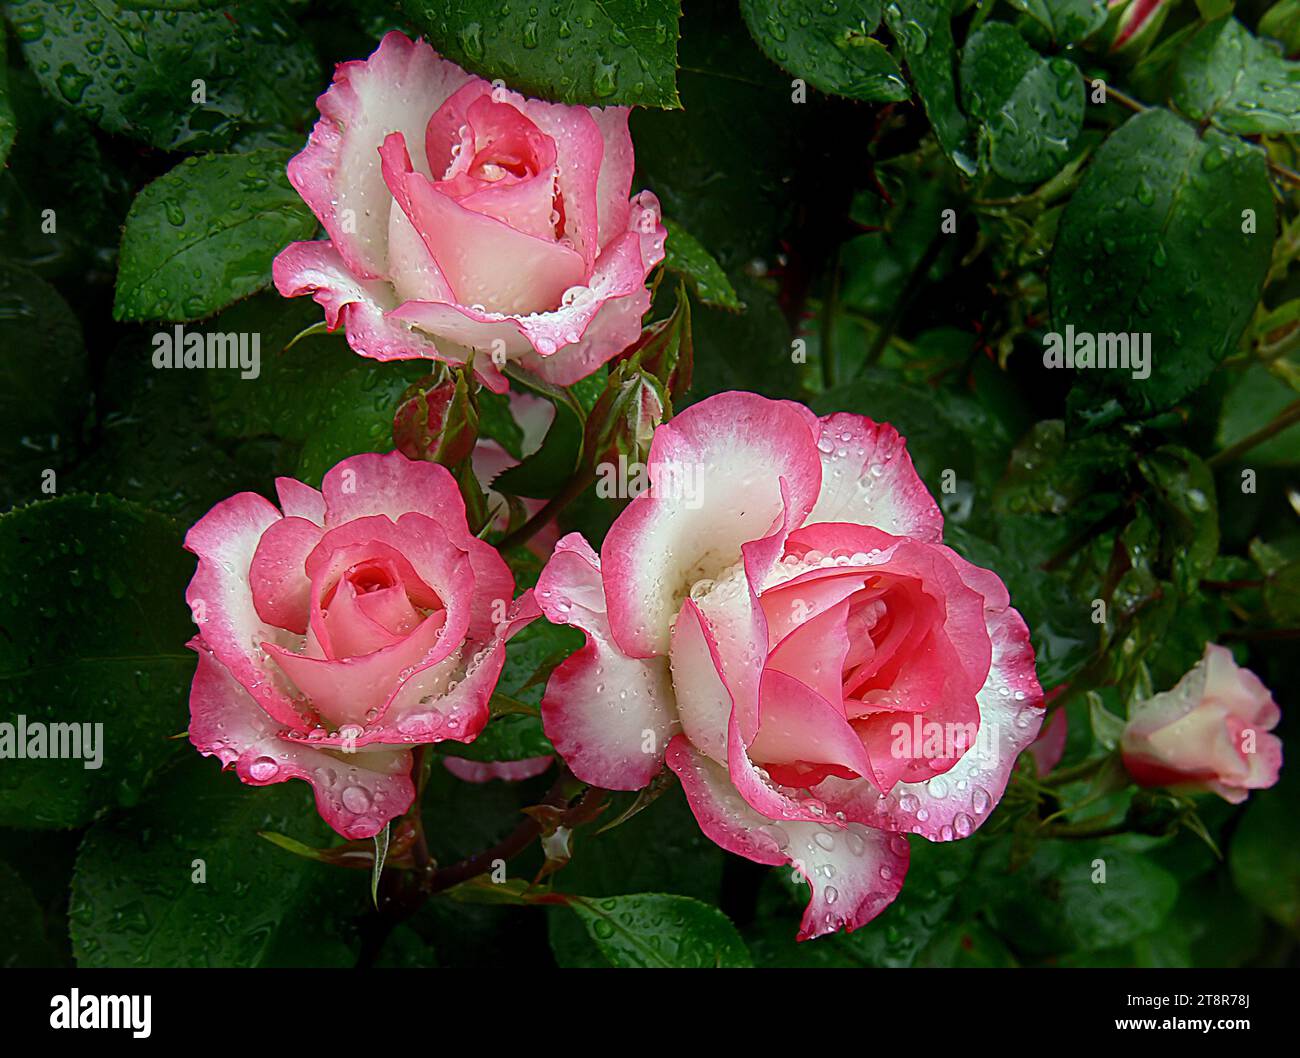 Raspberry Ice, Raspberry Ice è molto distinguibile per la colorazione dei suoi fiori, bianco cremoso con un attraente bordo rosa lampone. I fiori sono prodotti in ammassi e contrastano bene con il fogliame verde scuro. Quando è in piena fioritura, è una vista molto accattivante nel giardino e funziona bene anche all'interno di un vaso Foto Stock